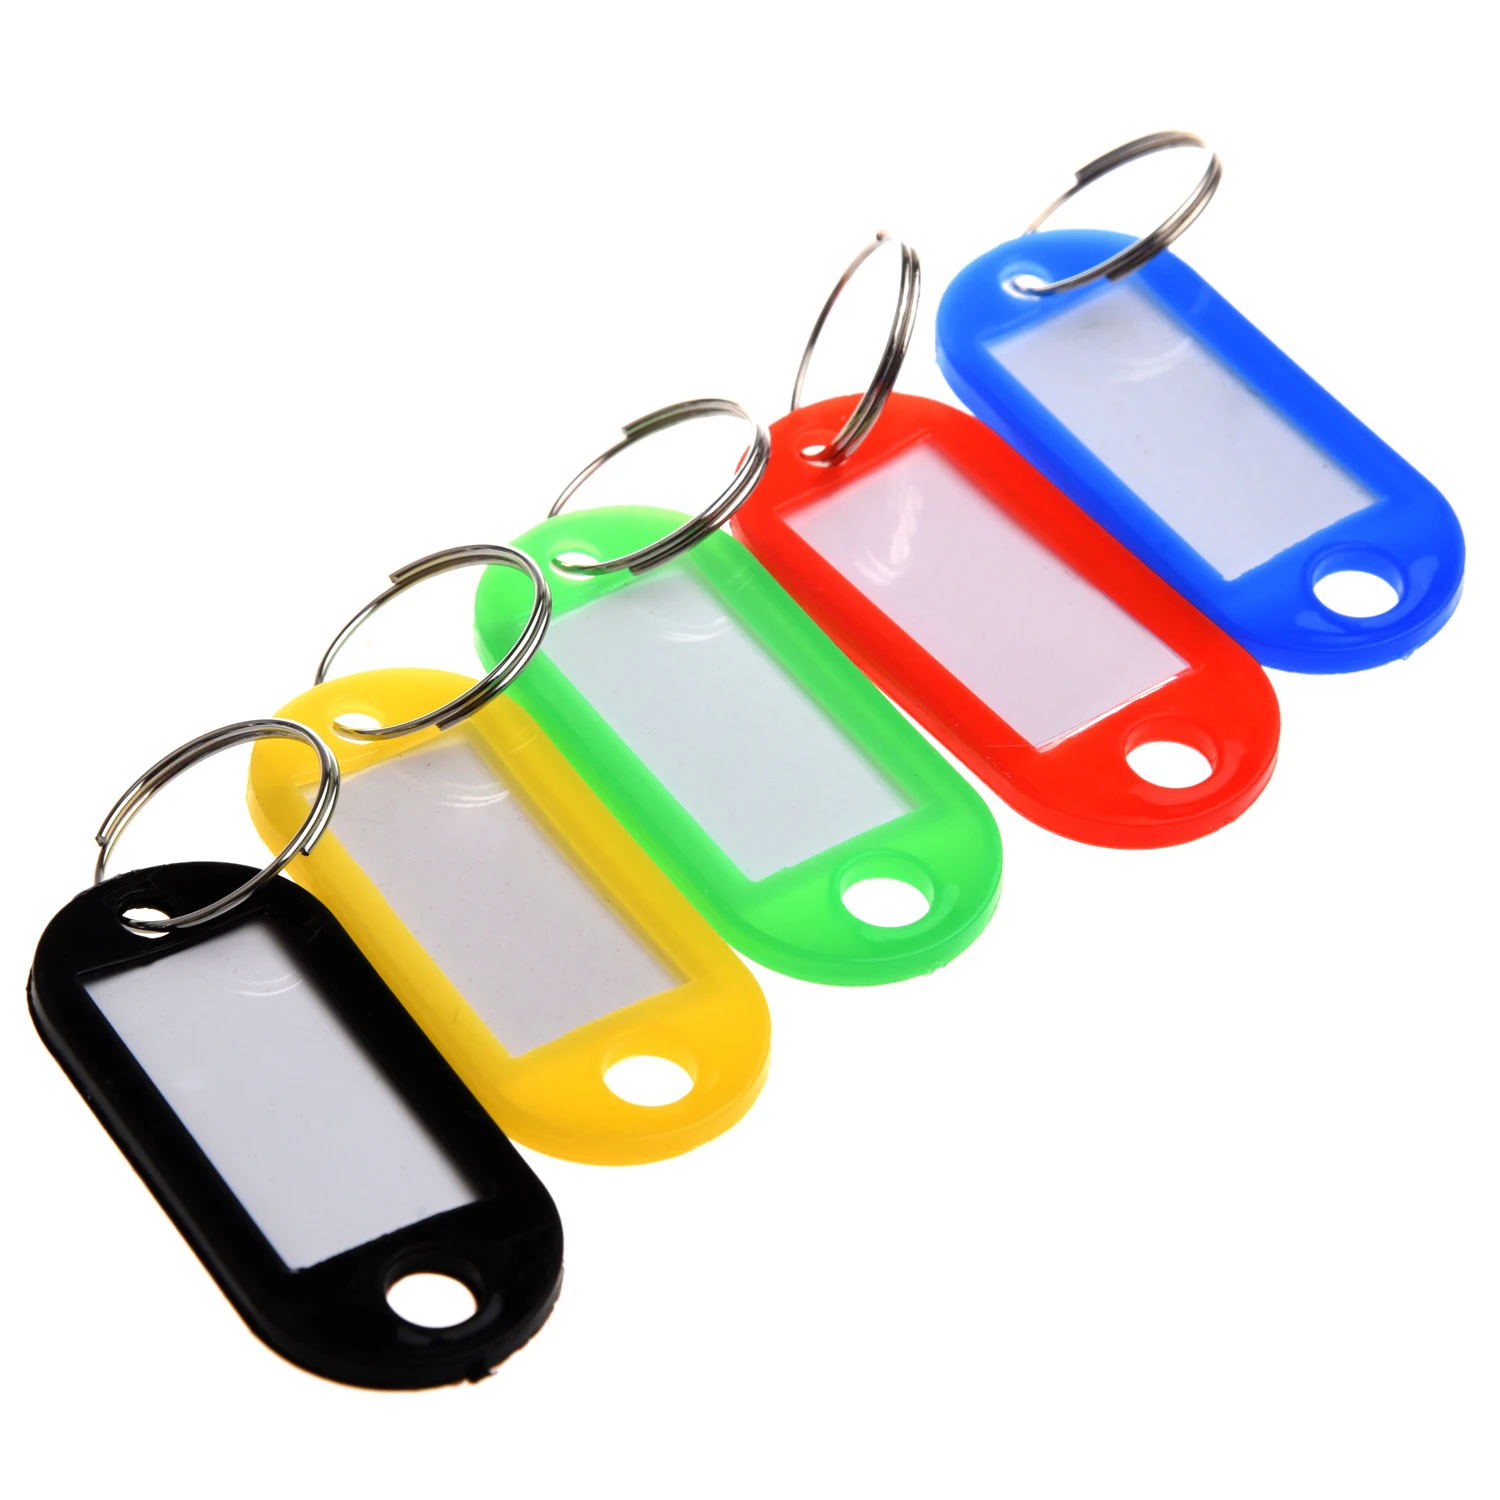 30 X цветные пластиковые брелки для ключей багажные ID бирки брелки с именными картами для многих видов использования